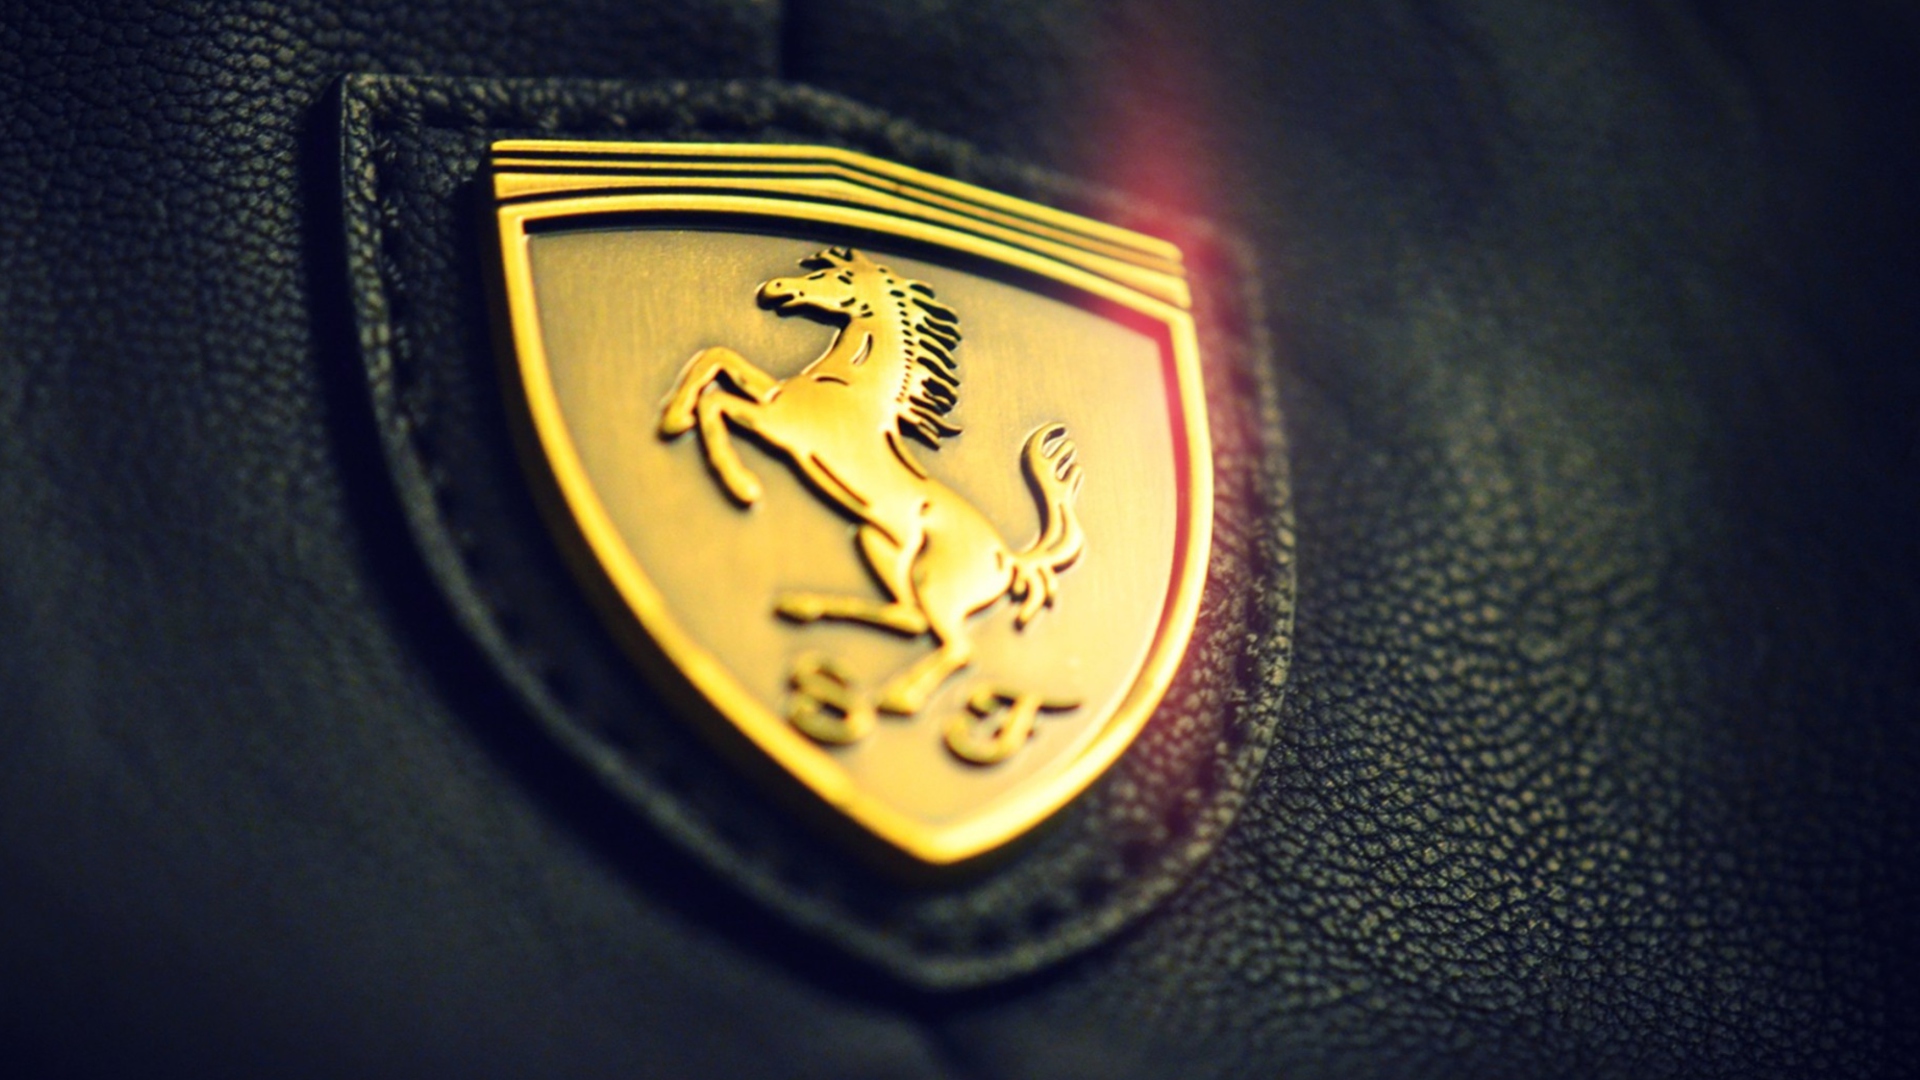 Das Ferrari Emblem Wallpaper 1920x1080